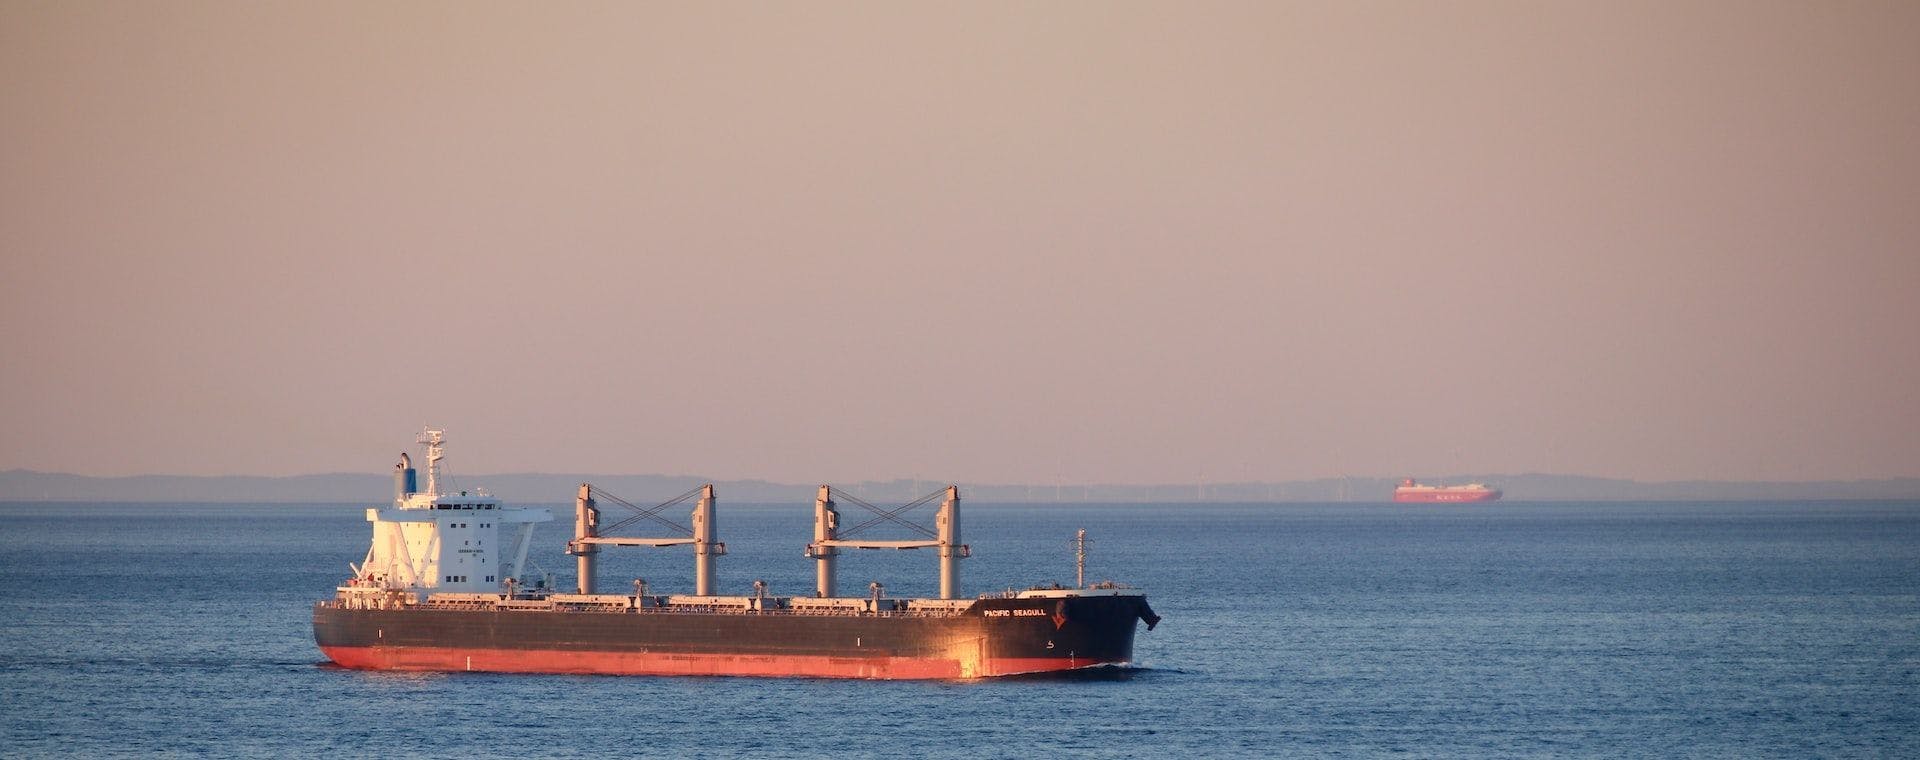 Морской экспорт российской нефти на прошлой неделе снизился на 22%